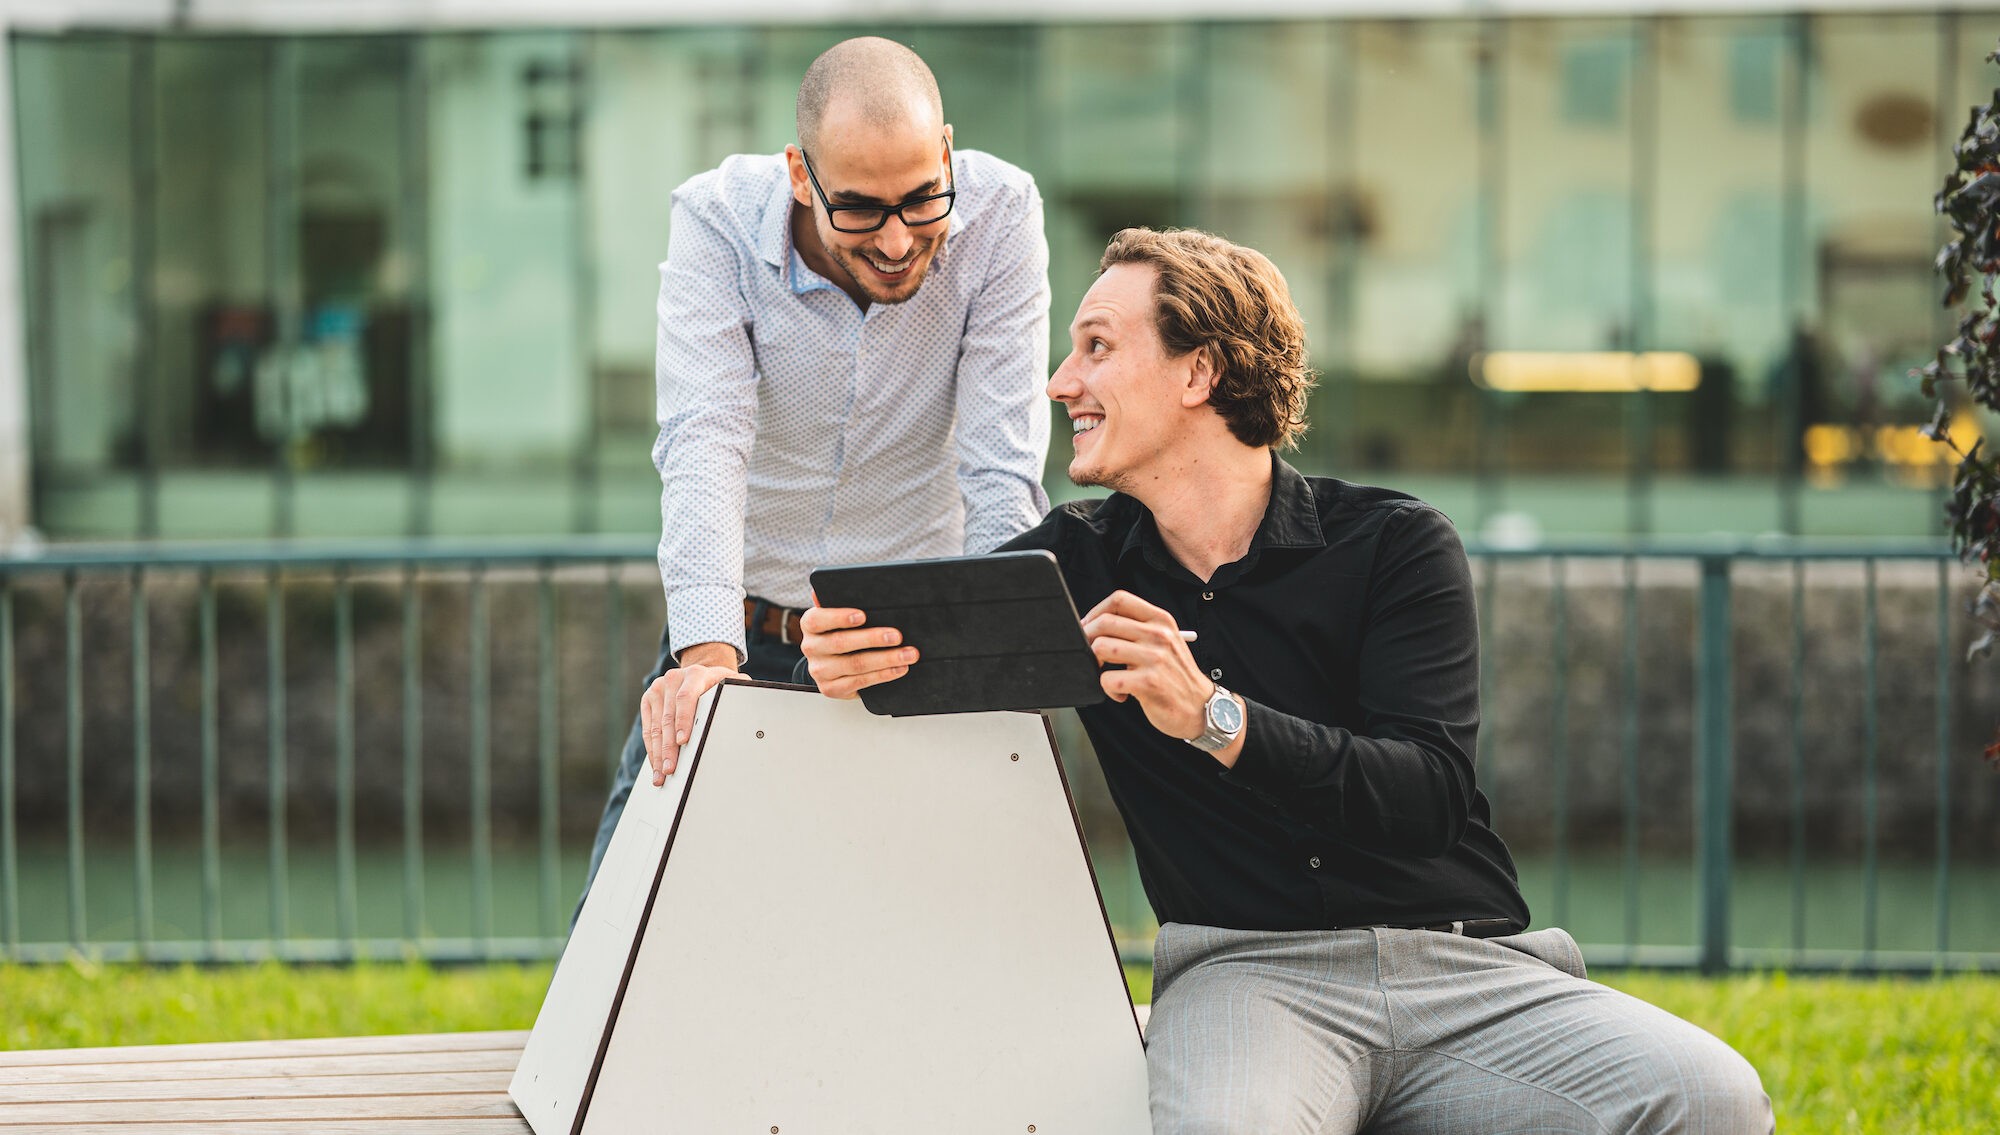 Thomas Steiner sitz auf einer Bank und zeigt Tobias Franek etwas auf einem iPad. Beide lachen.